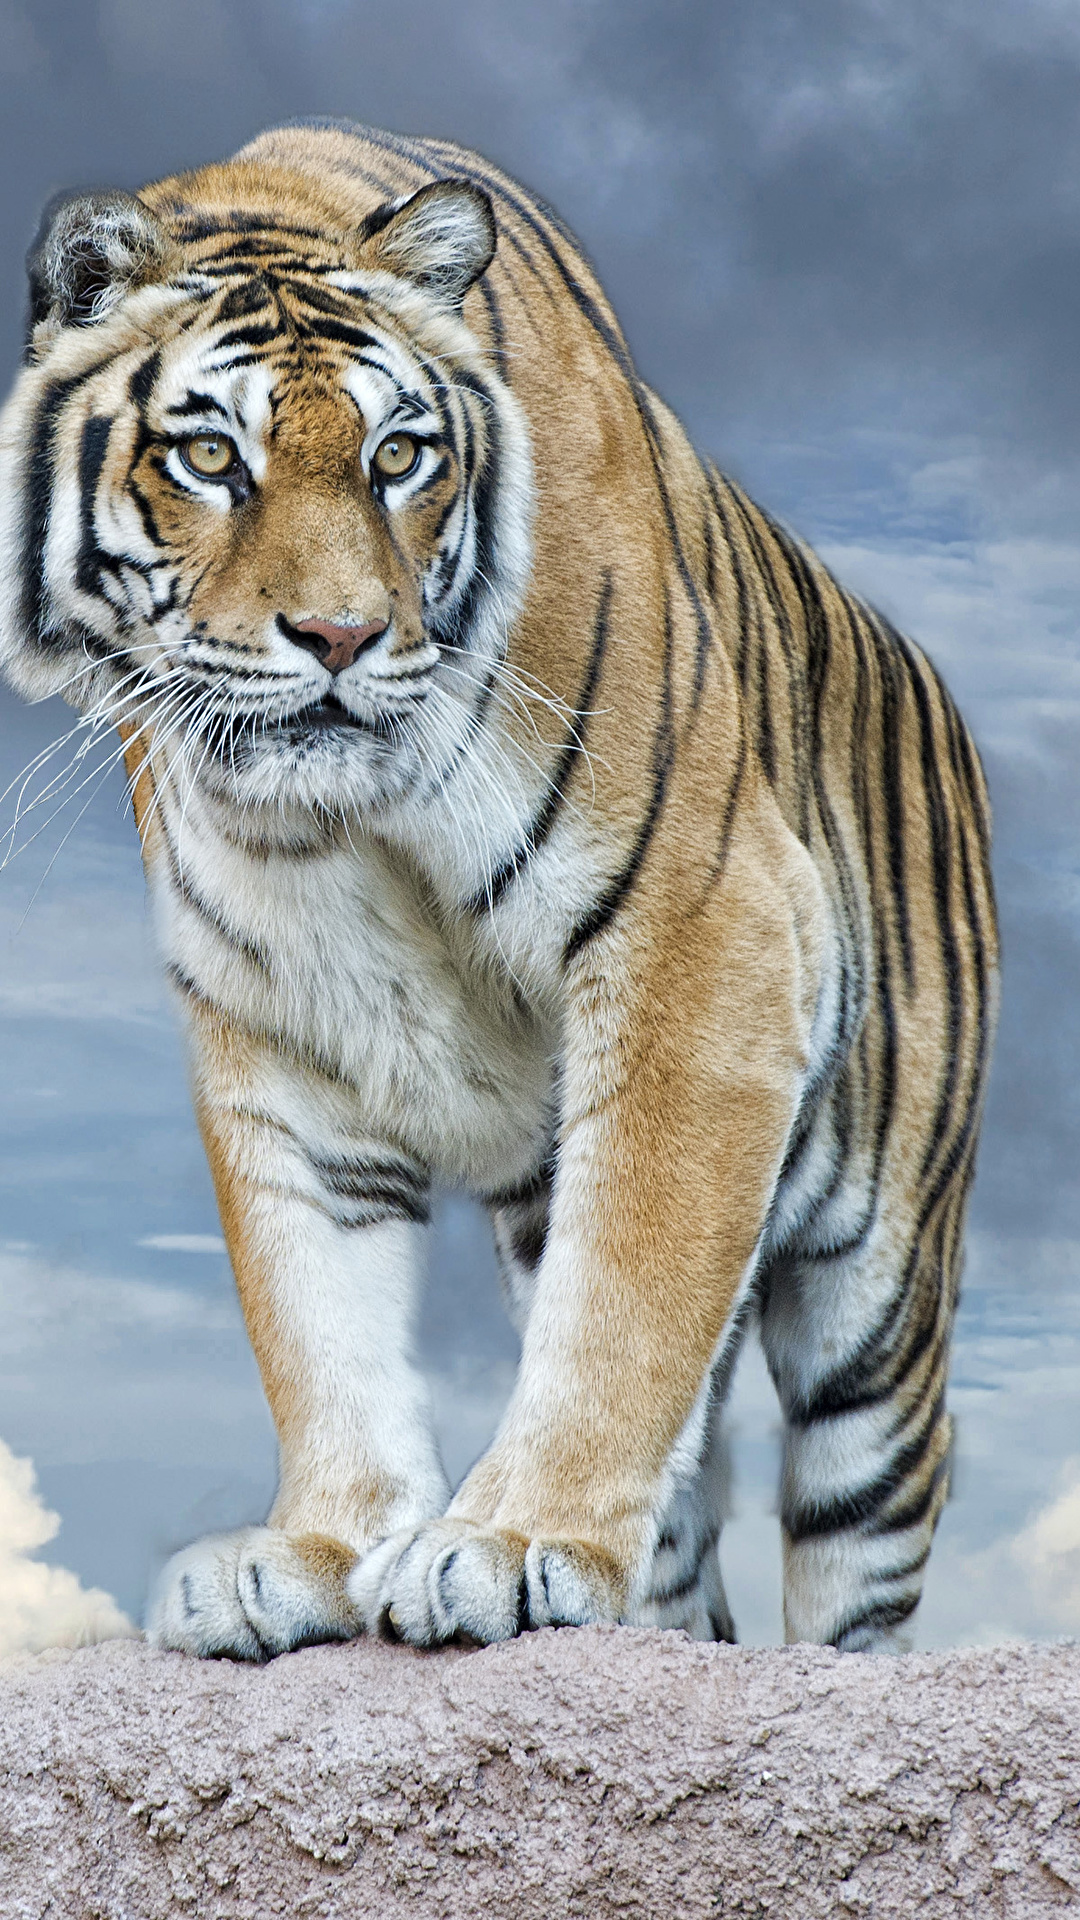 Fotos Von Tiger Grosse Katze Blick Ein Tier 1080x19